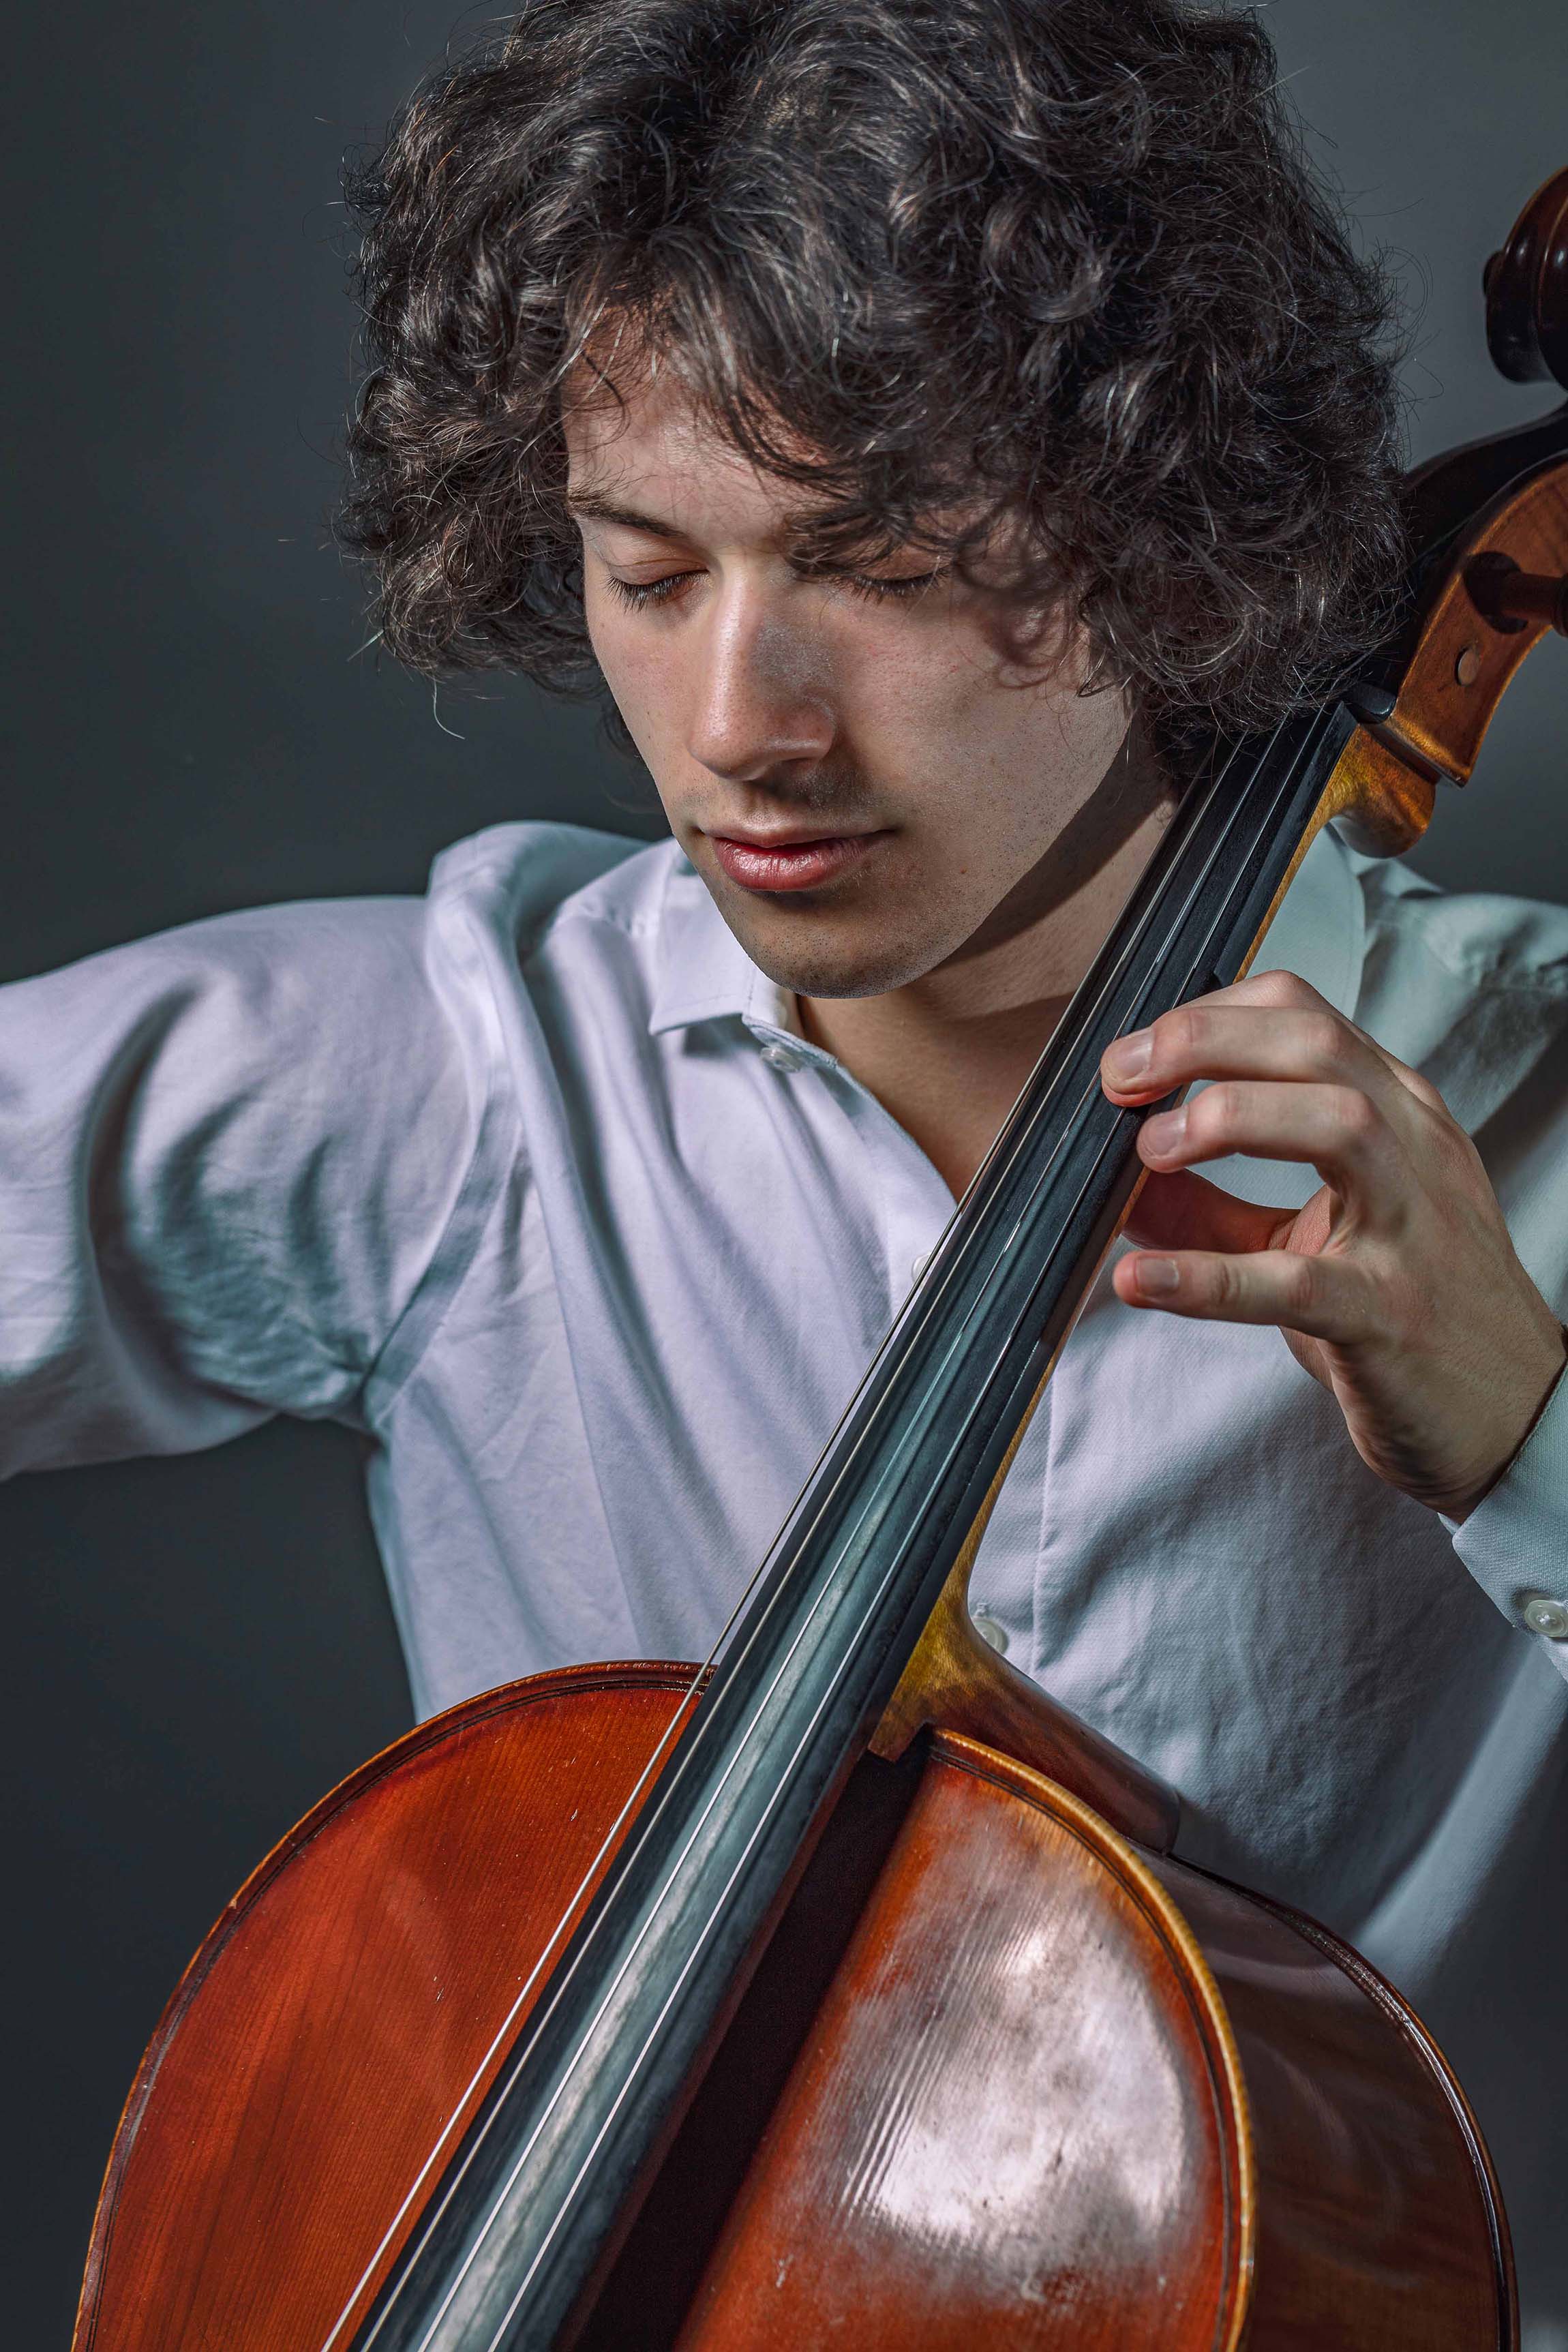 Young cellist portrait